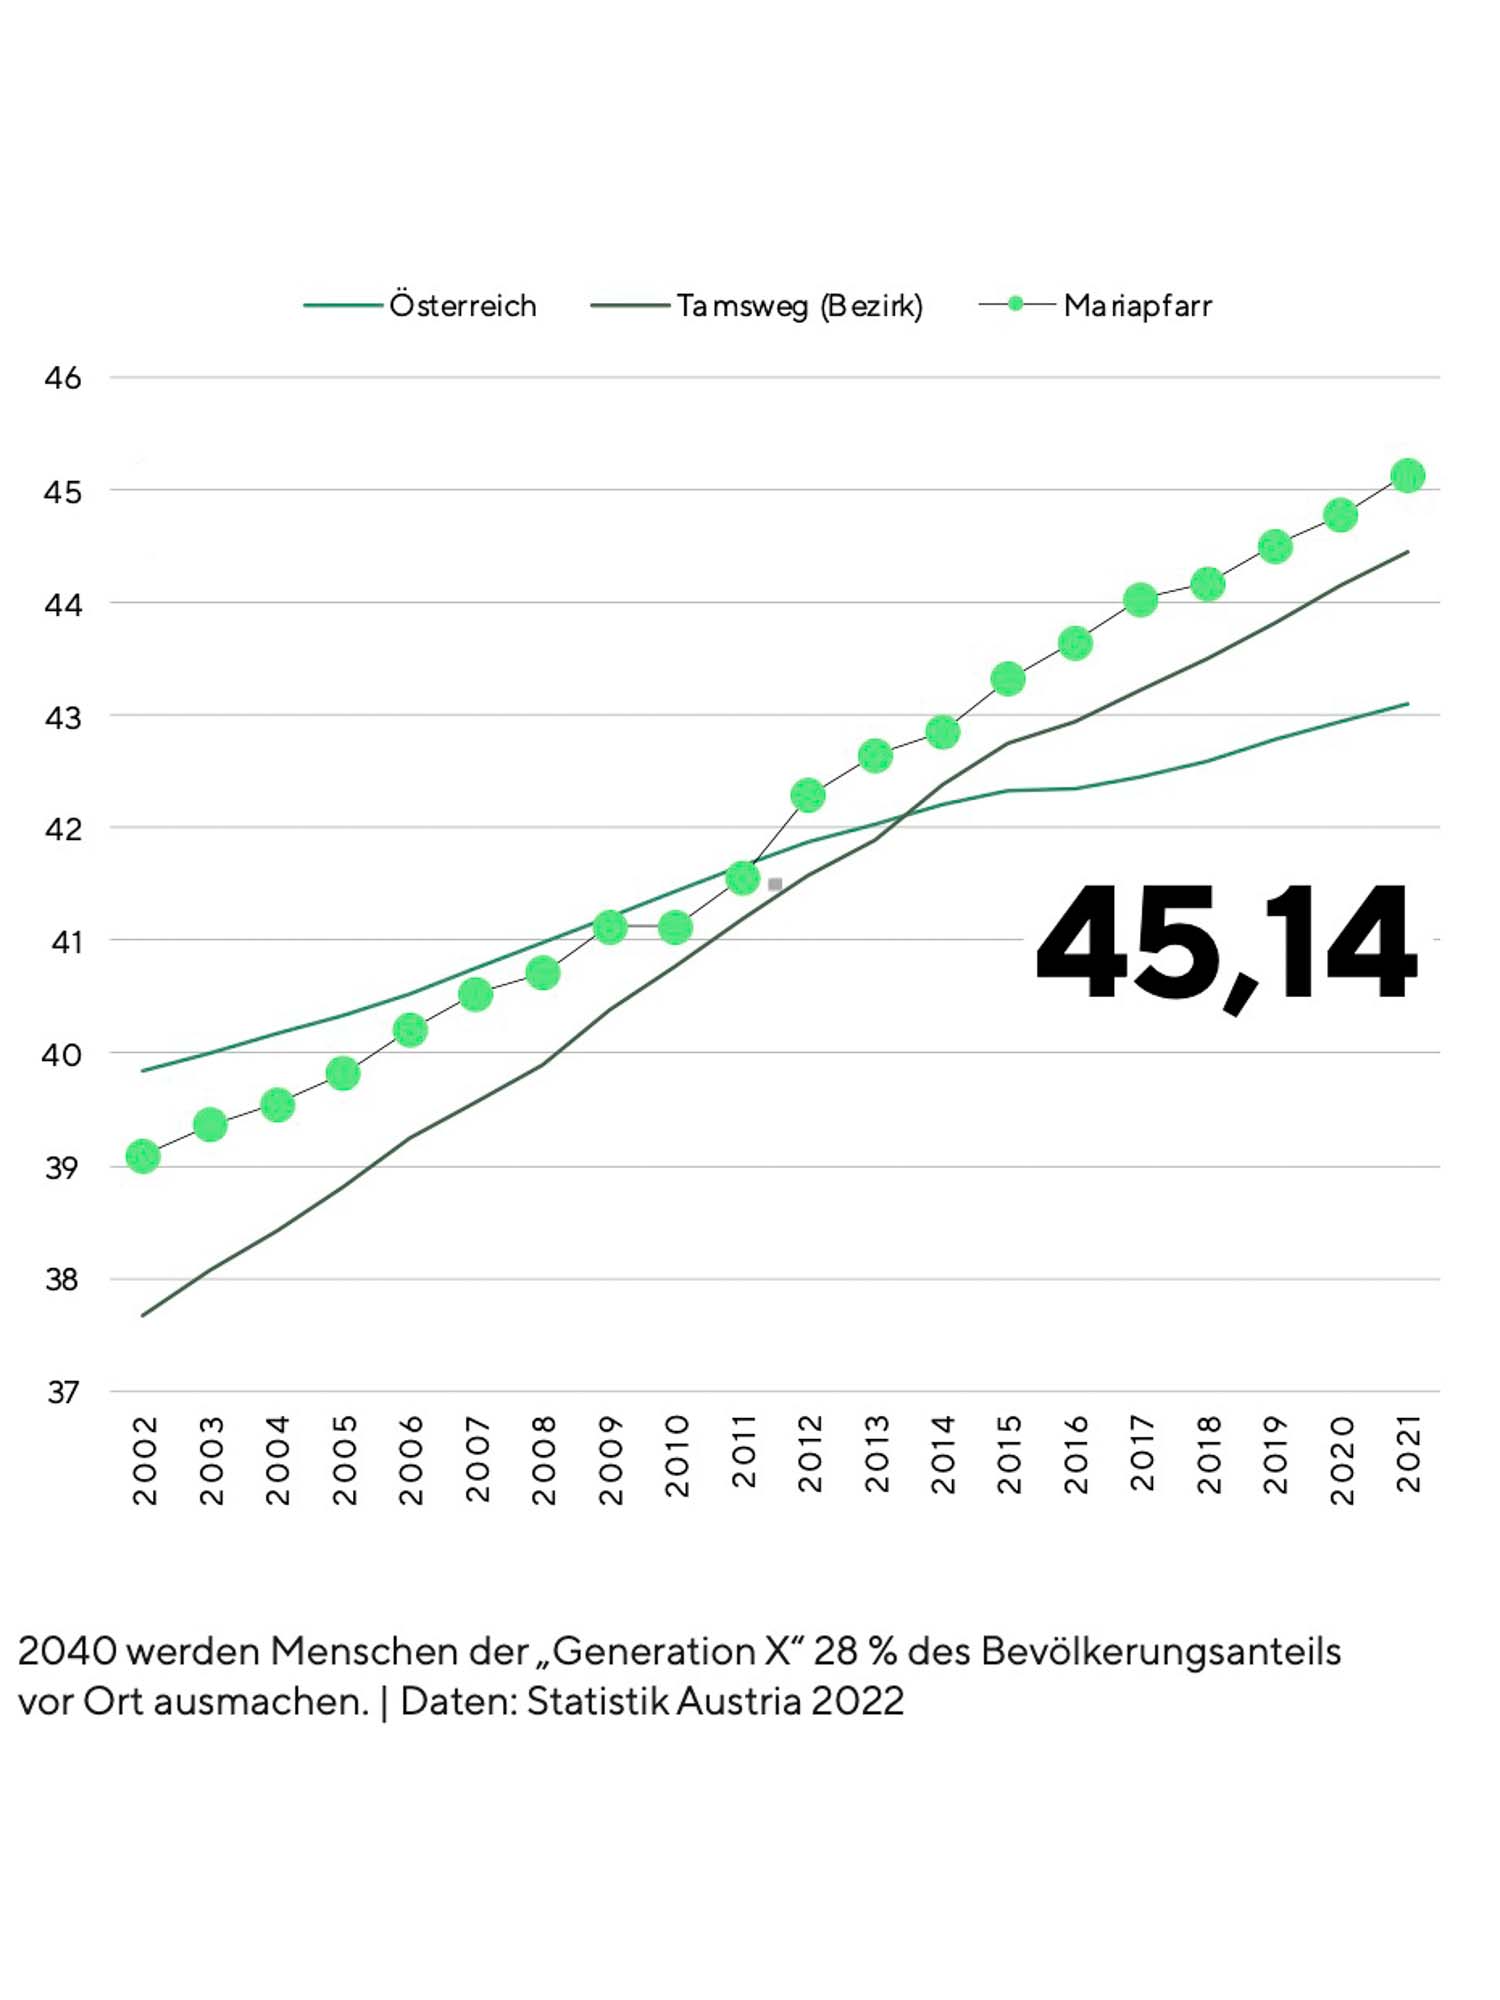 Diagramm zur demografischen Entwicklung in Österreich, dem Bezirk Tamsweg und Mariapfarr